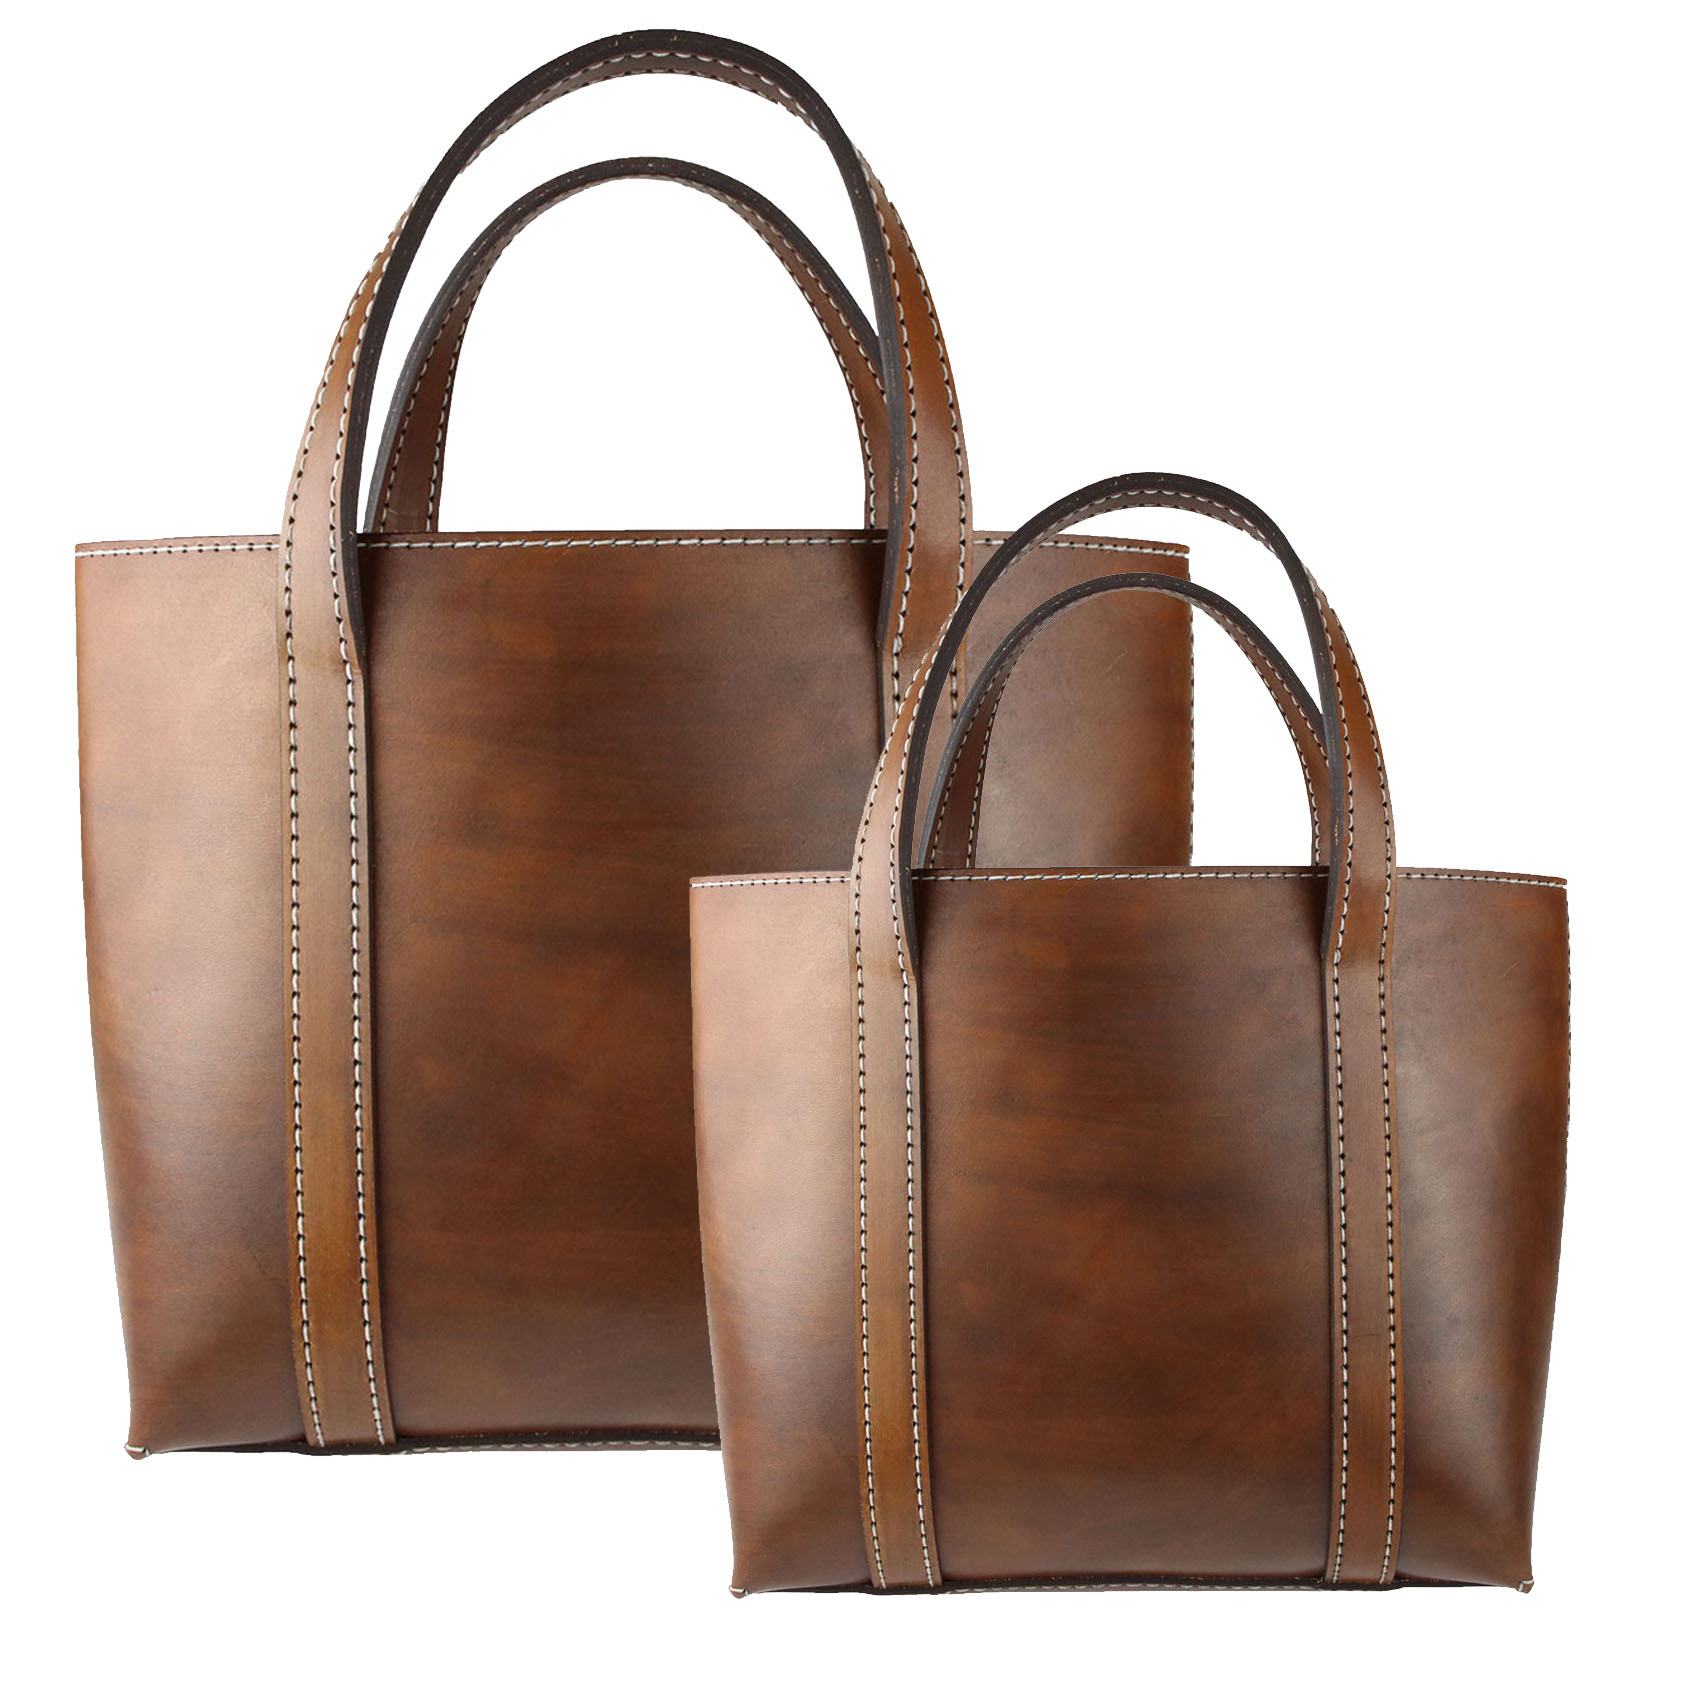 Kit sac à main DIY en cuir : fabriquez votre propre sac à main !